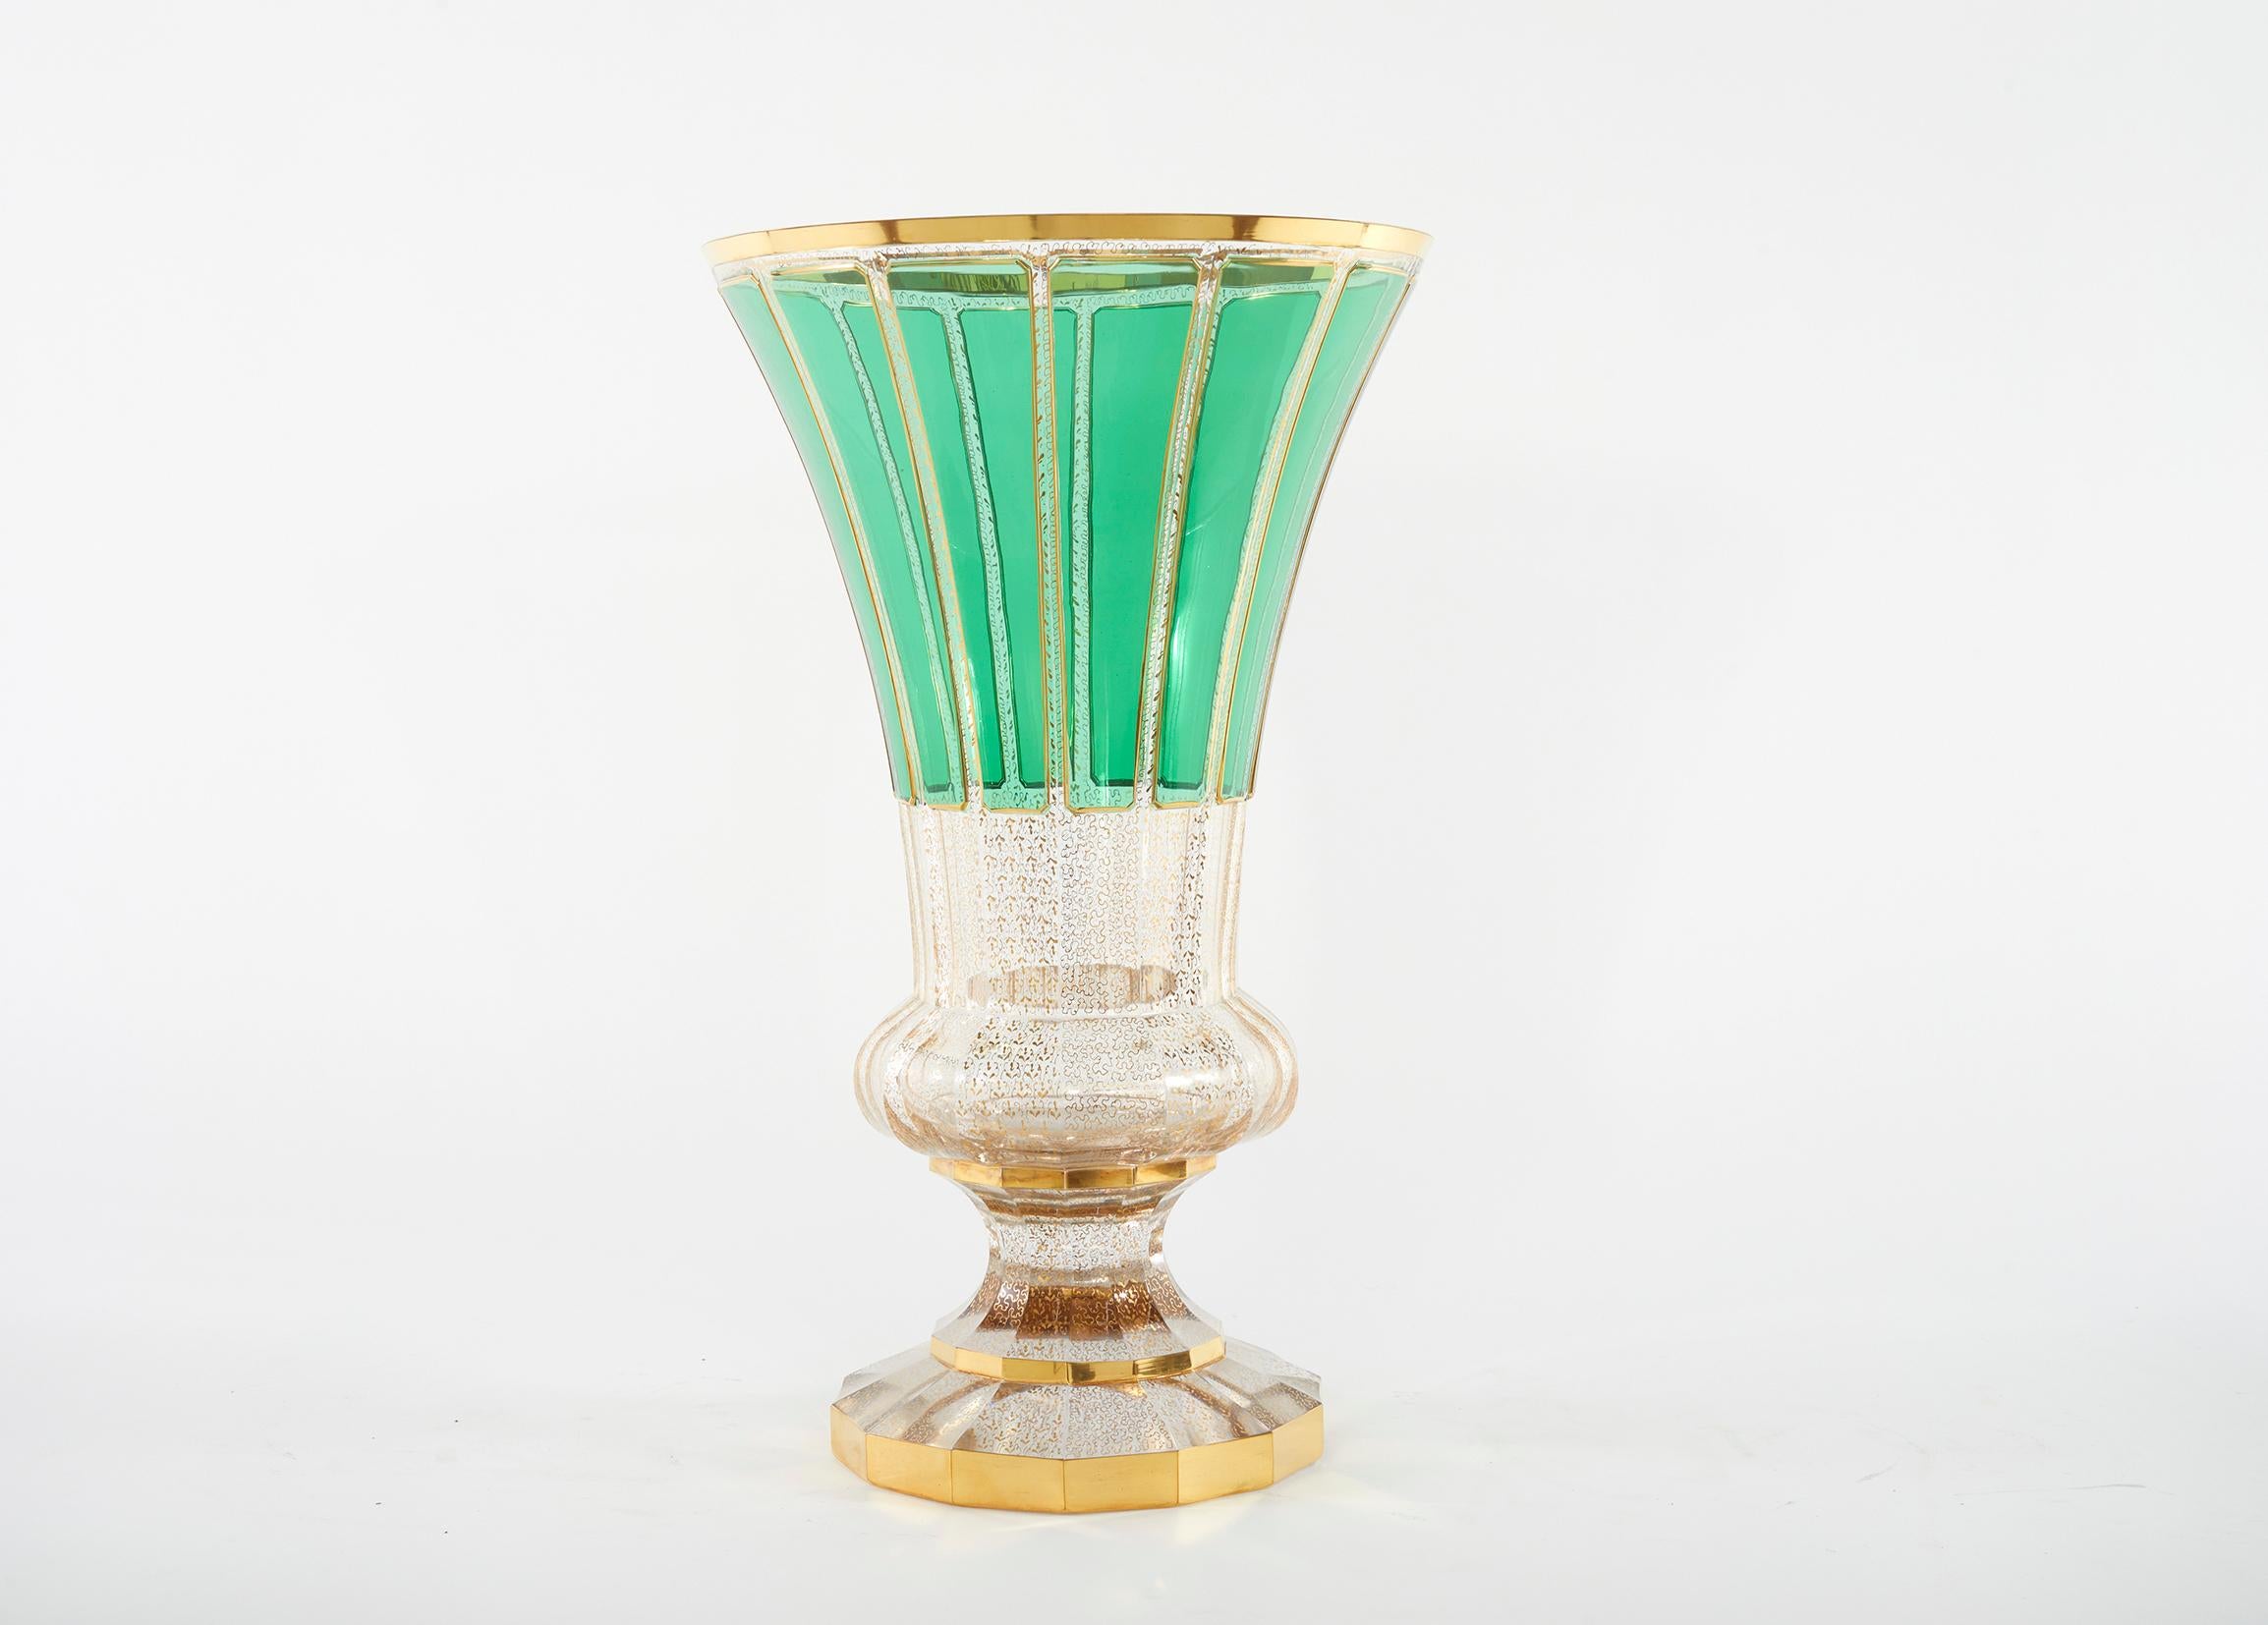 Très grand et très beau vase décoratif / pièce de Moser émaillé de panneaux verts avec des détails de design dorés. Le vase est en très bon état. Légères traces d'usure sous les rayons. Aucun défaut observé, la décoration est brillante et intacte.